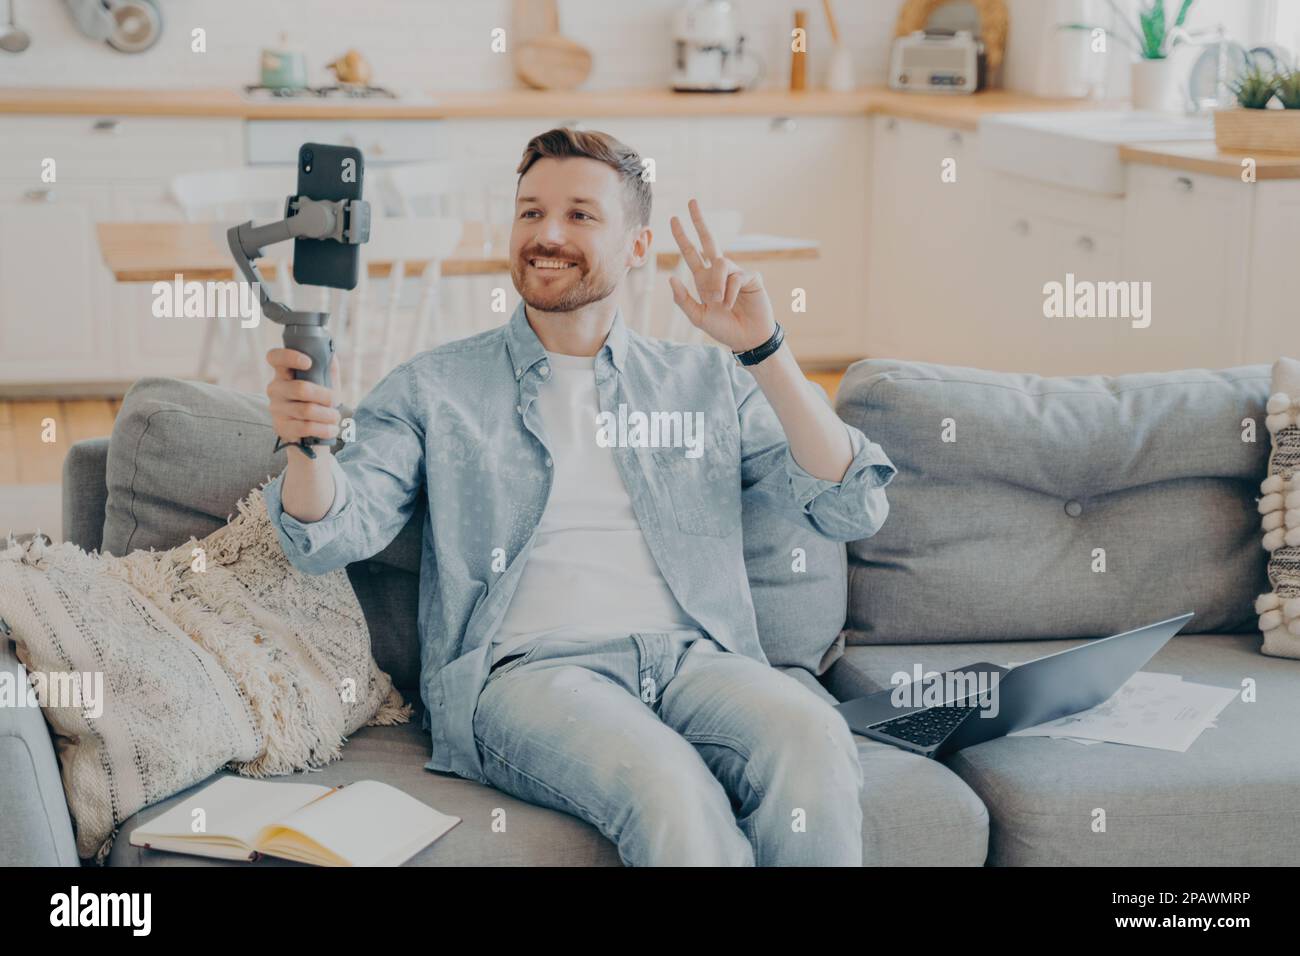 Positiver junger Mann mit Bart, der während eines Videogesprächs ein Friedenszeichen zeigt, sitzt auf einer bequemen Couch mit Laptop und Papieren, offenes Notizbuch neben ihm, verschwommen Stockfoto